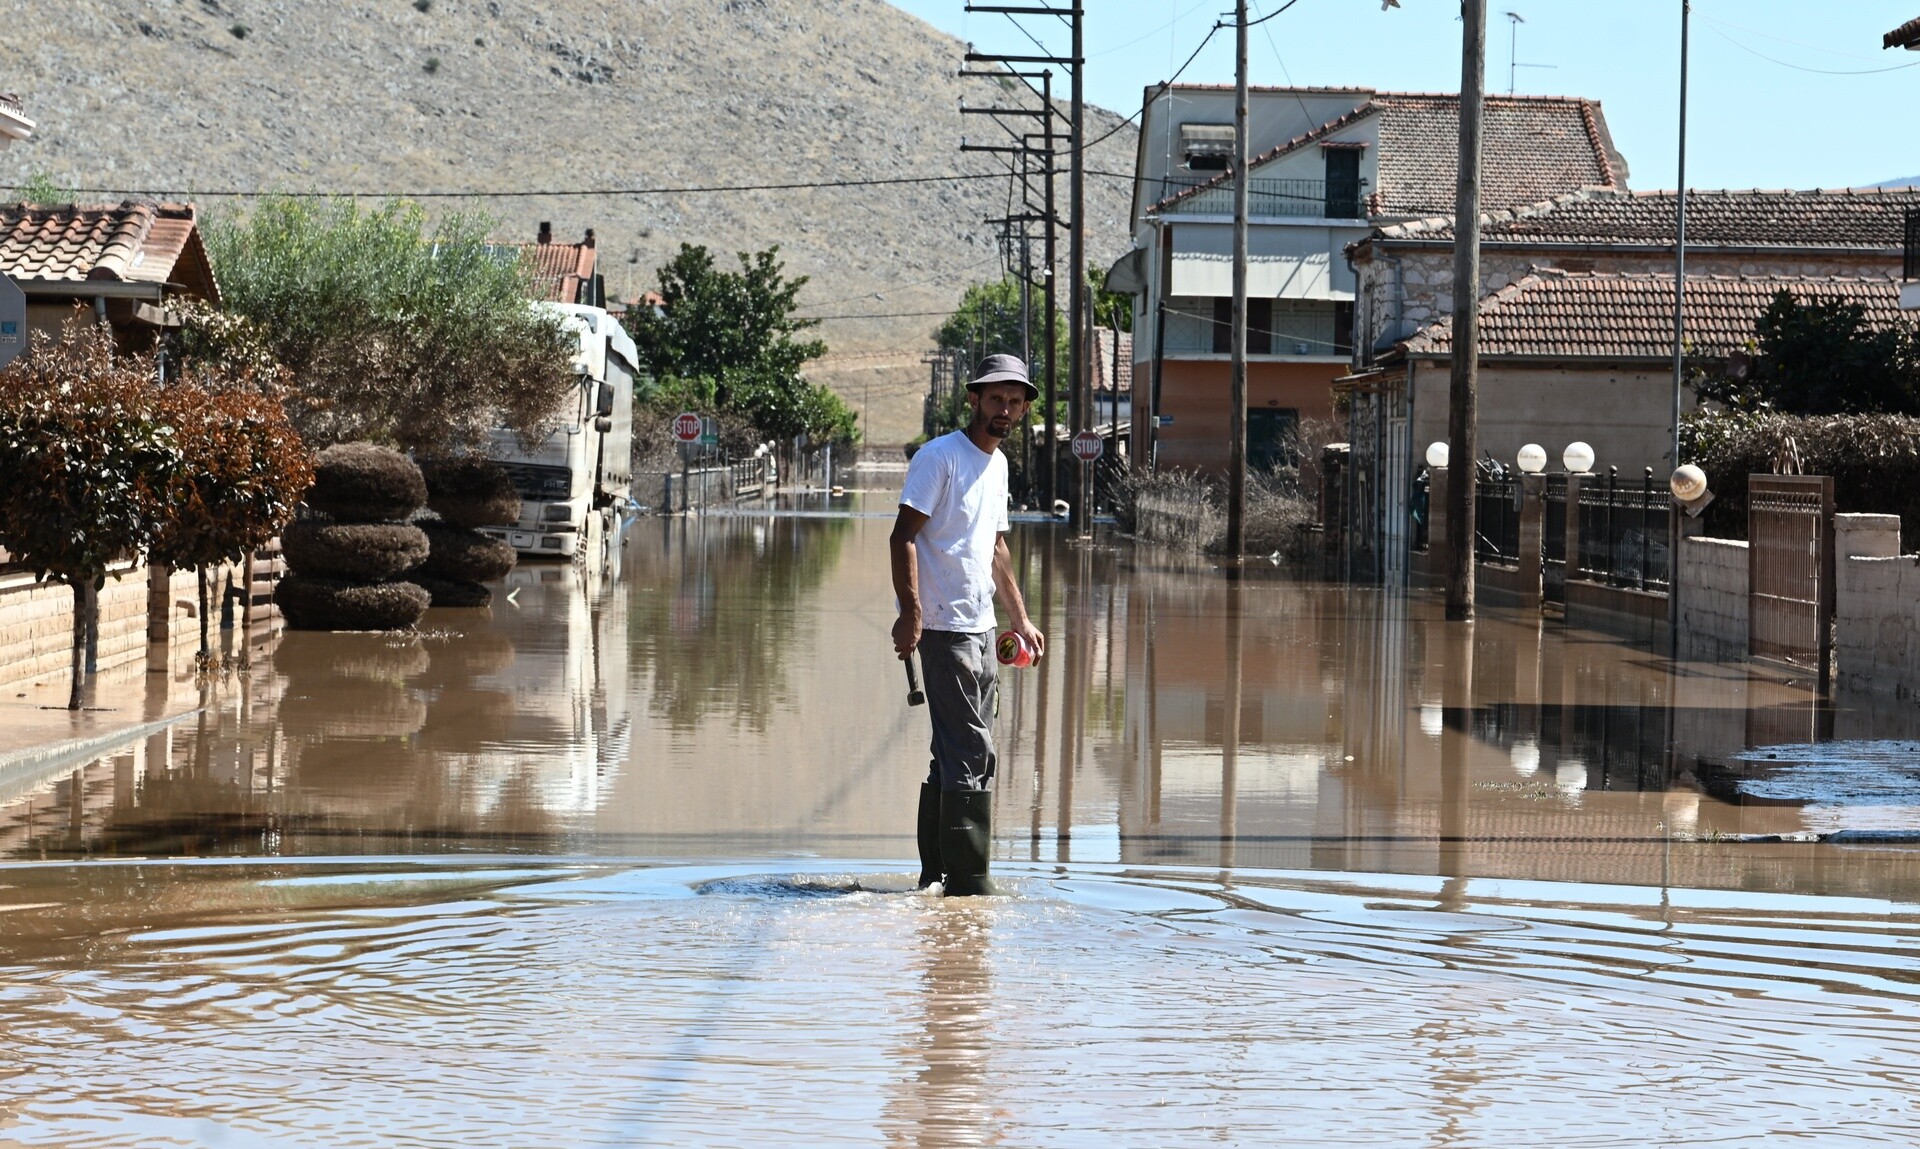 Απελπισμένοι οι κάτοικοι στη Φαρκαδόνα 7 μήνες μετά τις πλημμύρες: «Μας έχουν παρατήσει»